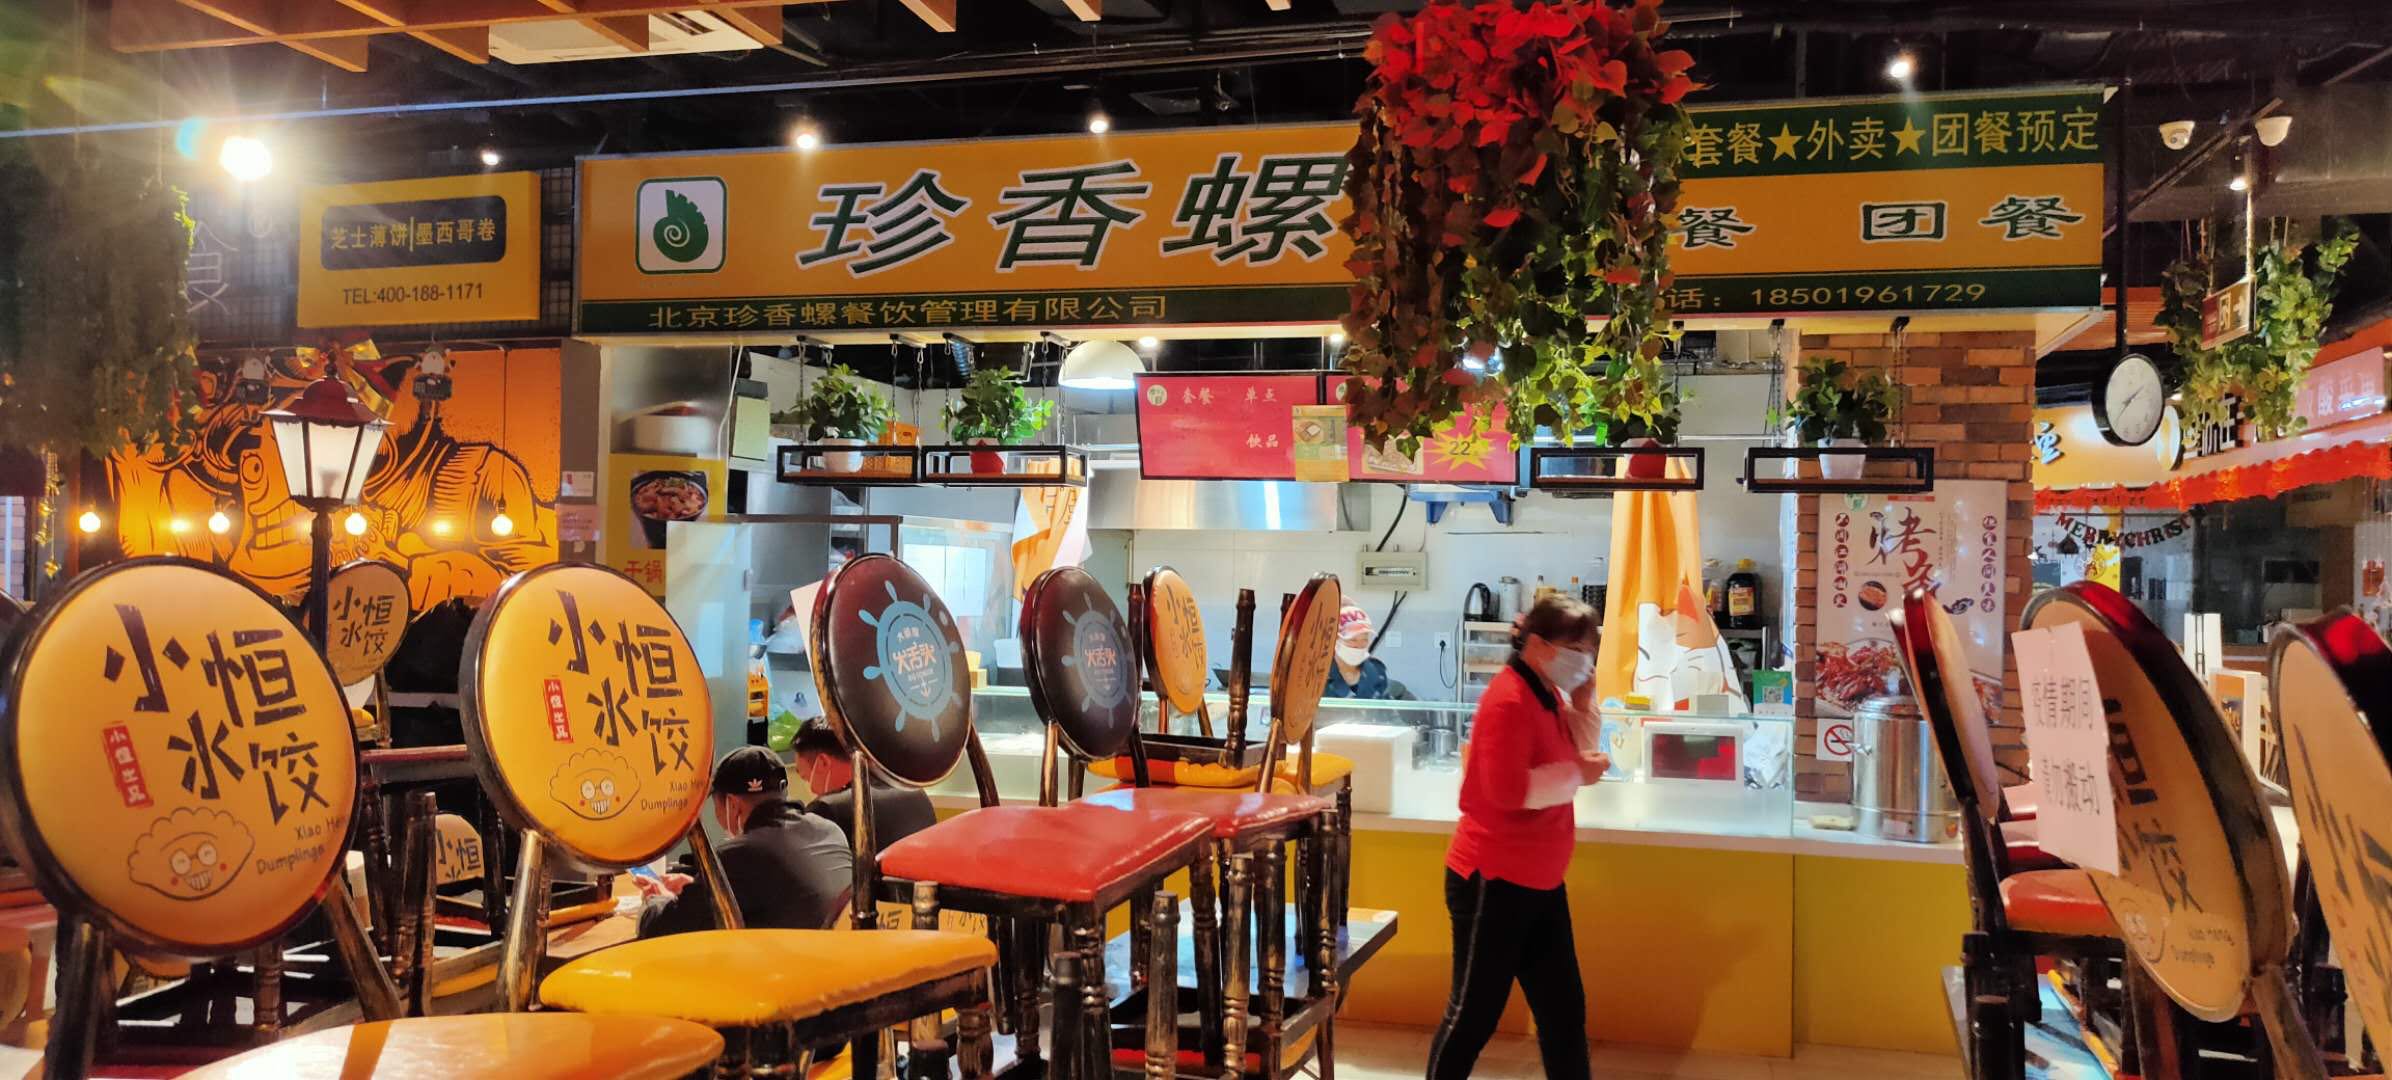 我们推荐好吃的珍香_珍香螺地址相关-北京珍香螺餐饮管理有限公司